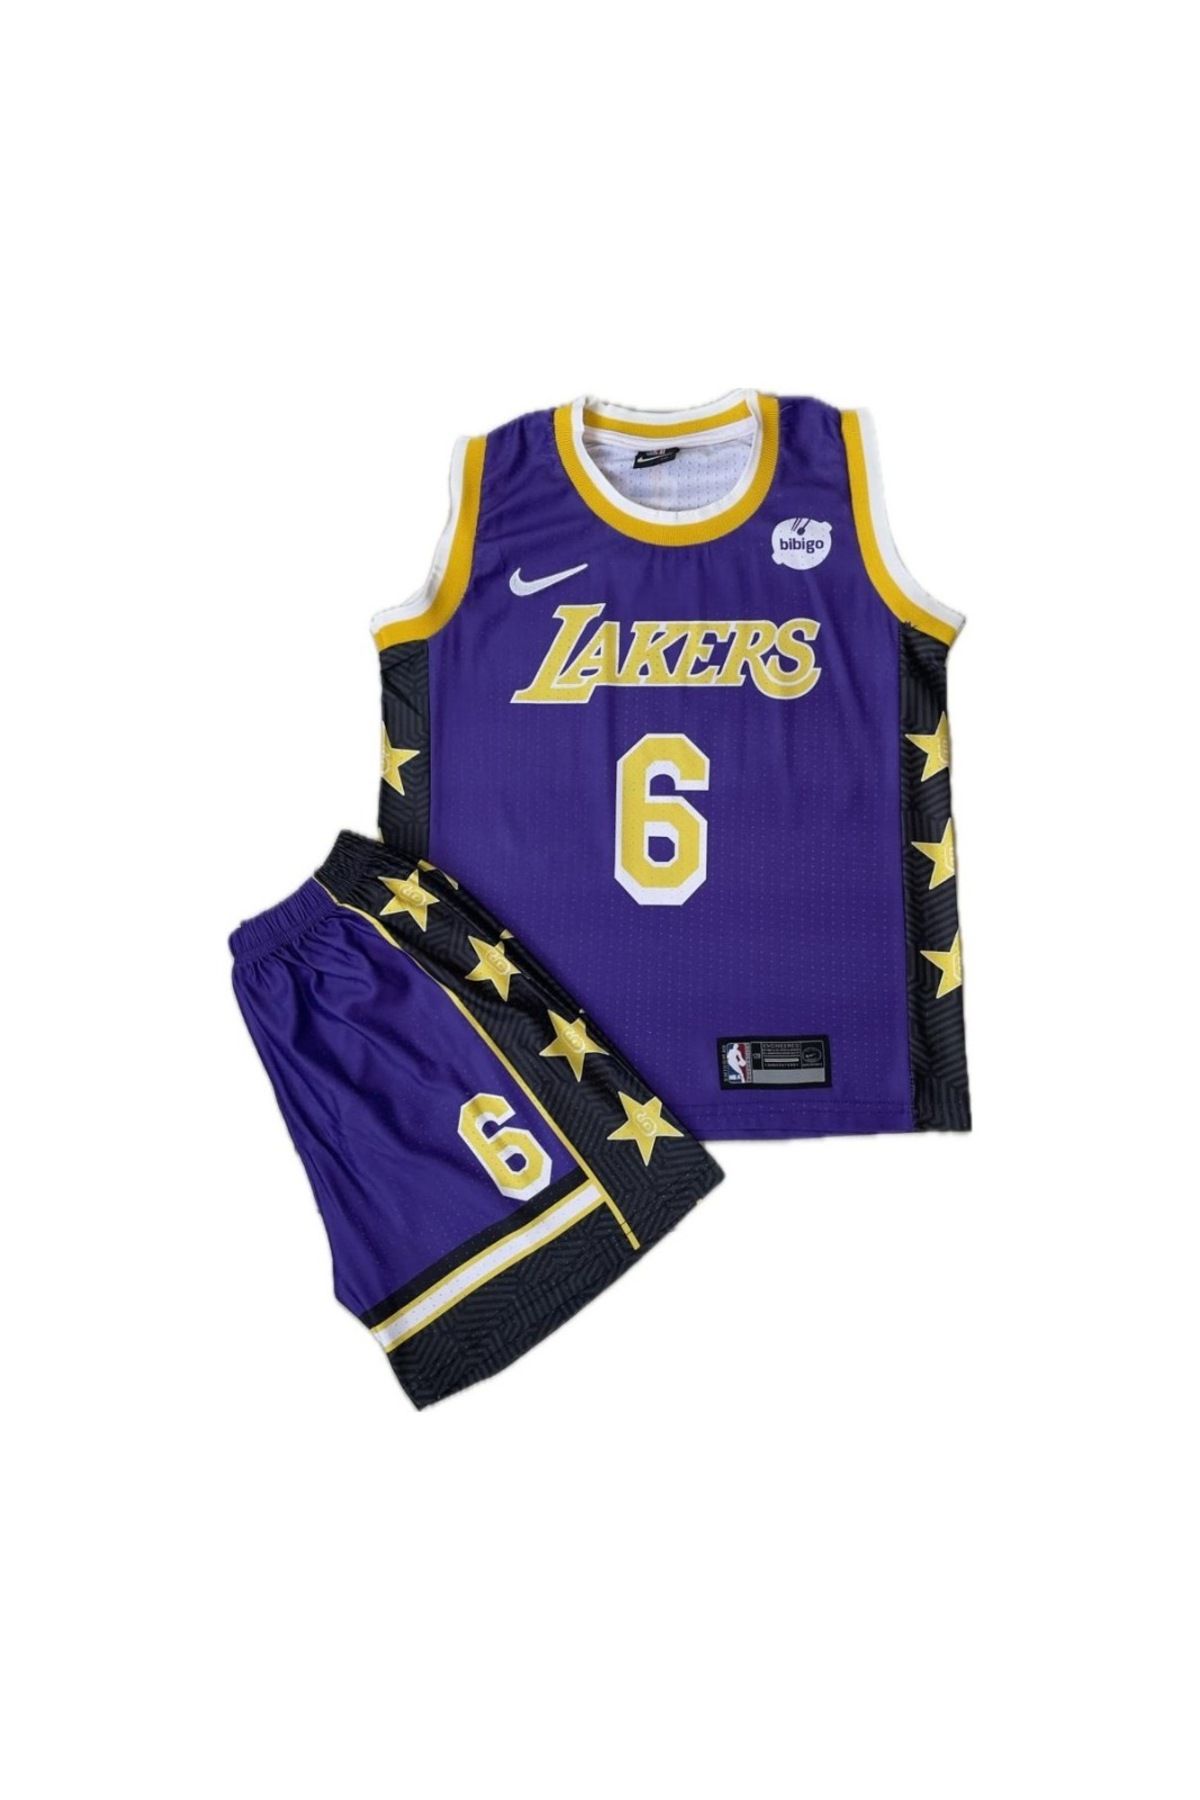 gökmenspor Ithal Kumaş Basketbol Lakers 6 James Çocuk Forma Takımı Siyah Mavi Hediyeli